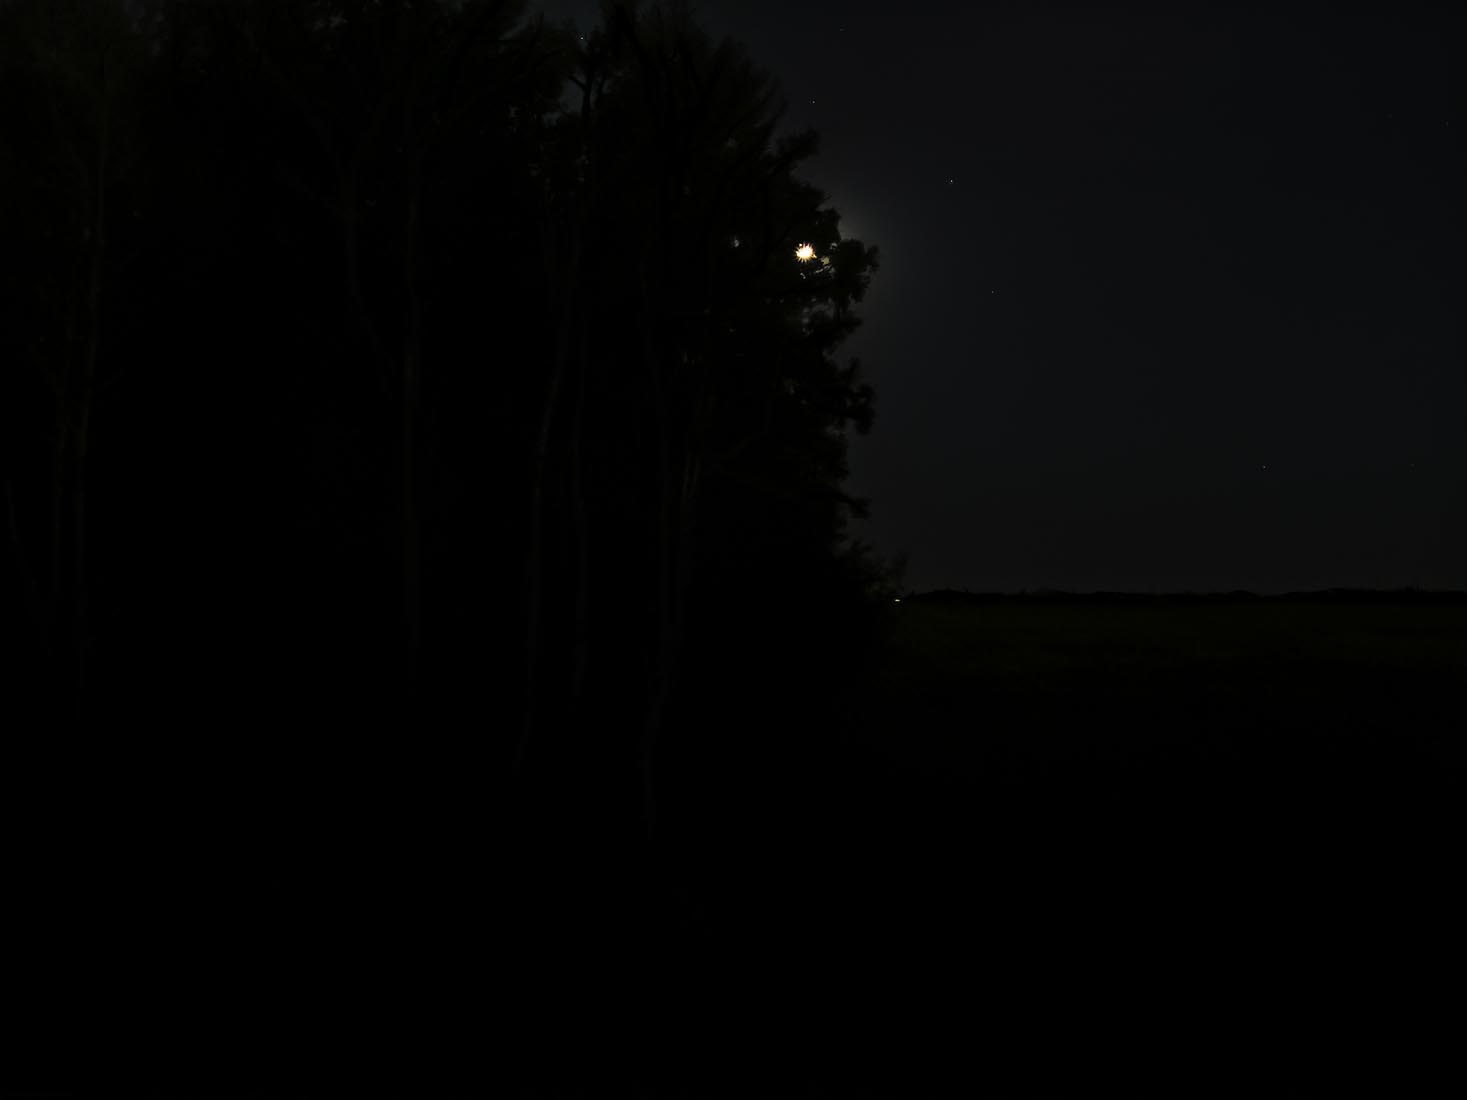 Mysterious Twilight/Night World: Moon on the Farm